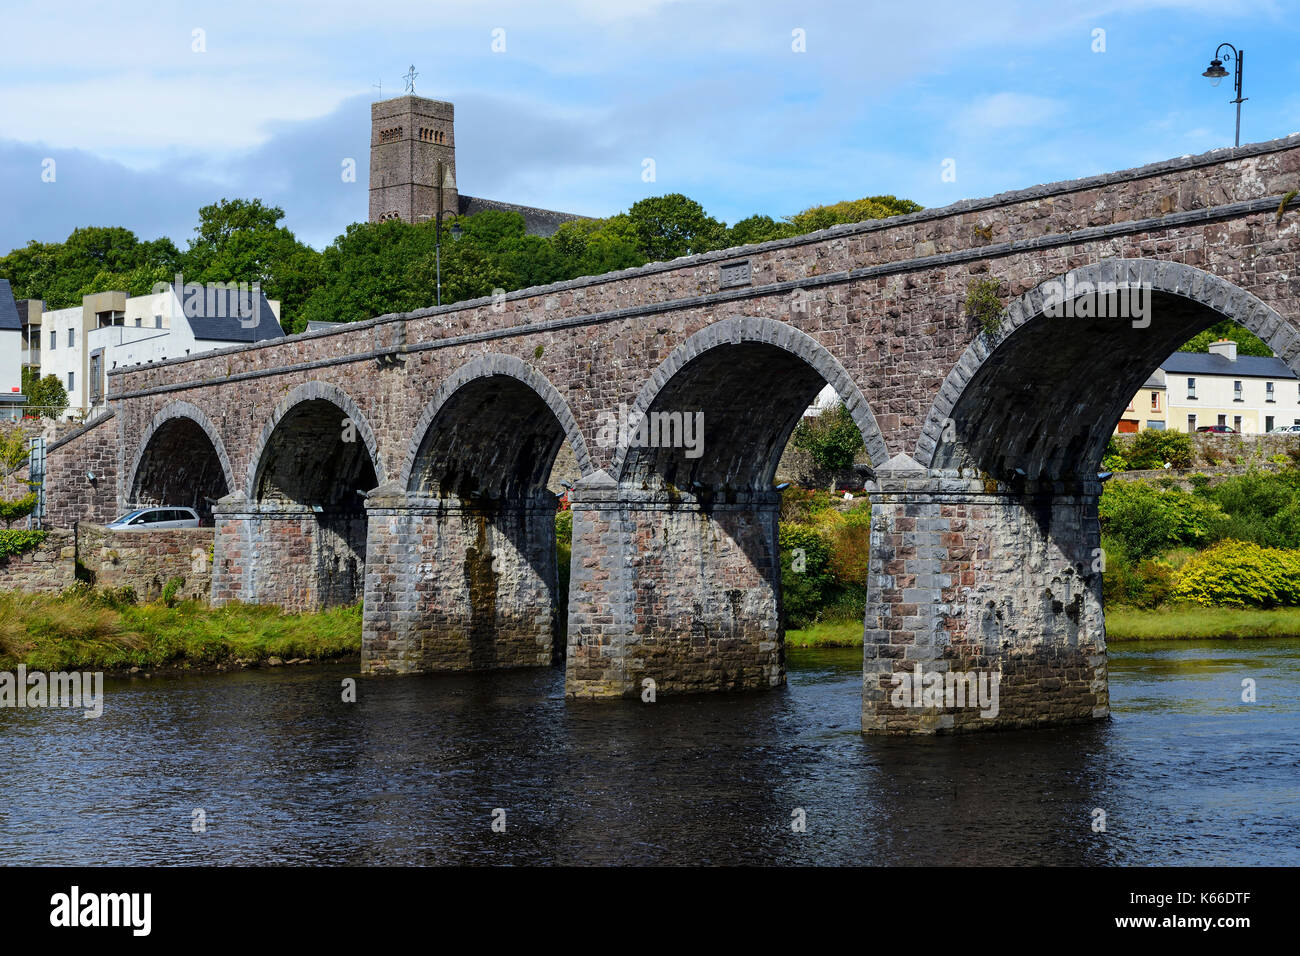 Siete Arch puente que cruza el río Newport con St Patrick's Church de fondo, Newport, en el condado de Mayo, República de Irlanda Foto de stock